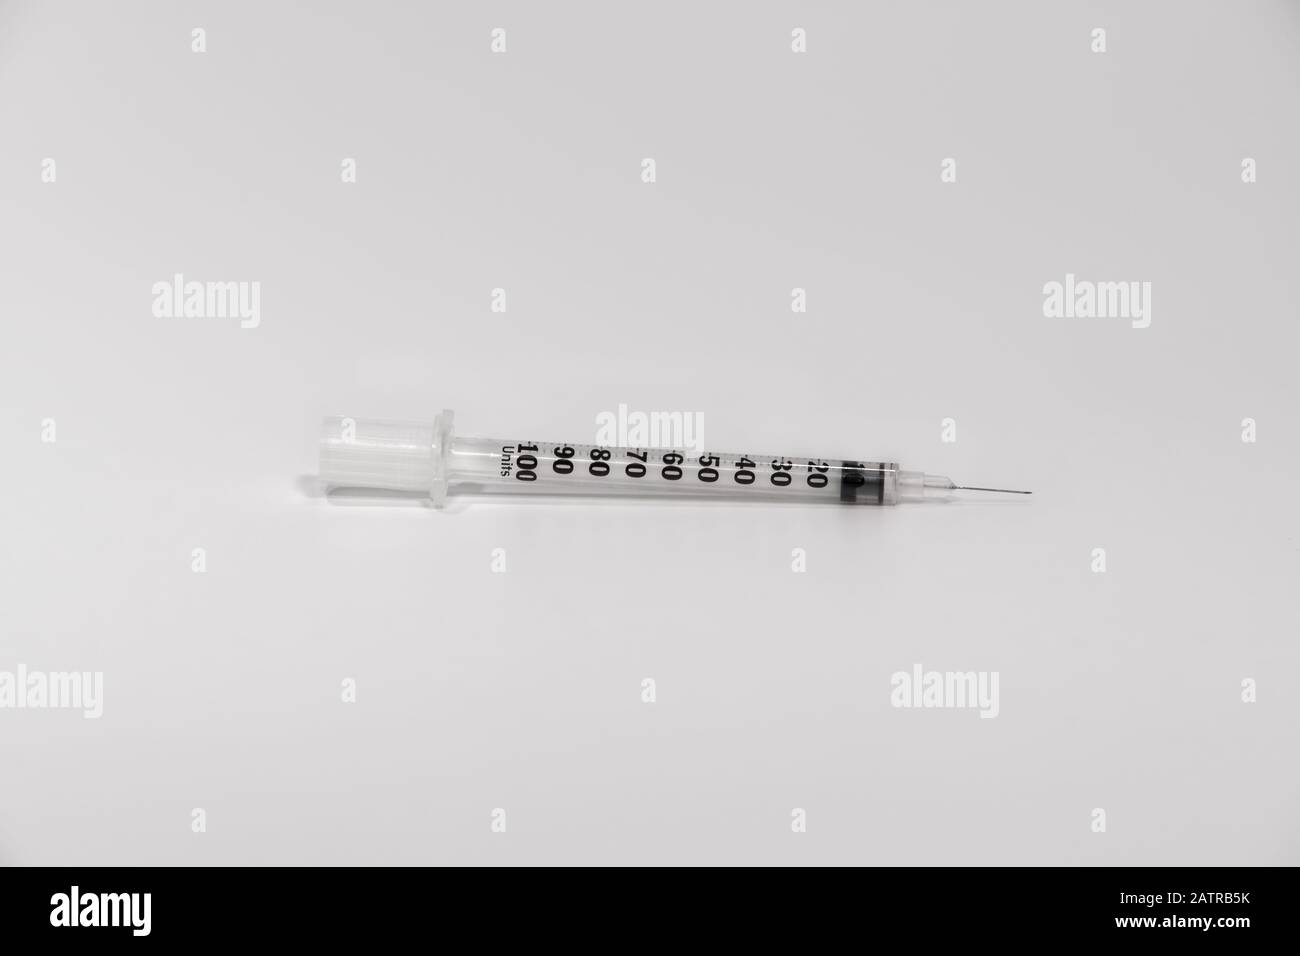 Jeringa de insulina plástica desechable con boquilla metálica. Inyección de bomba alternativa sin copa, aguja de acero inoxidable y medición de unidades ml. Foto de stock